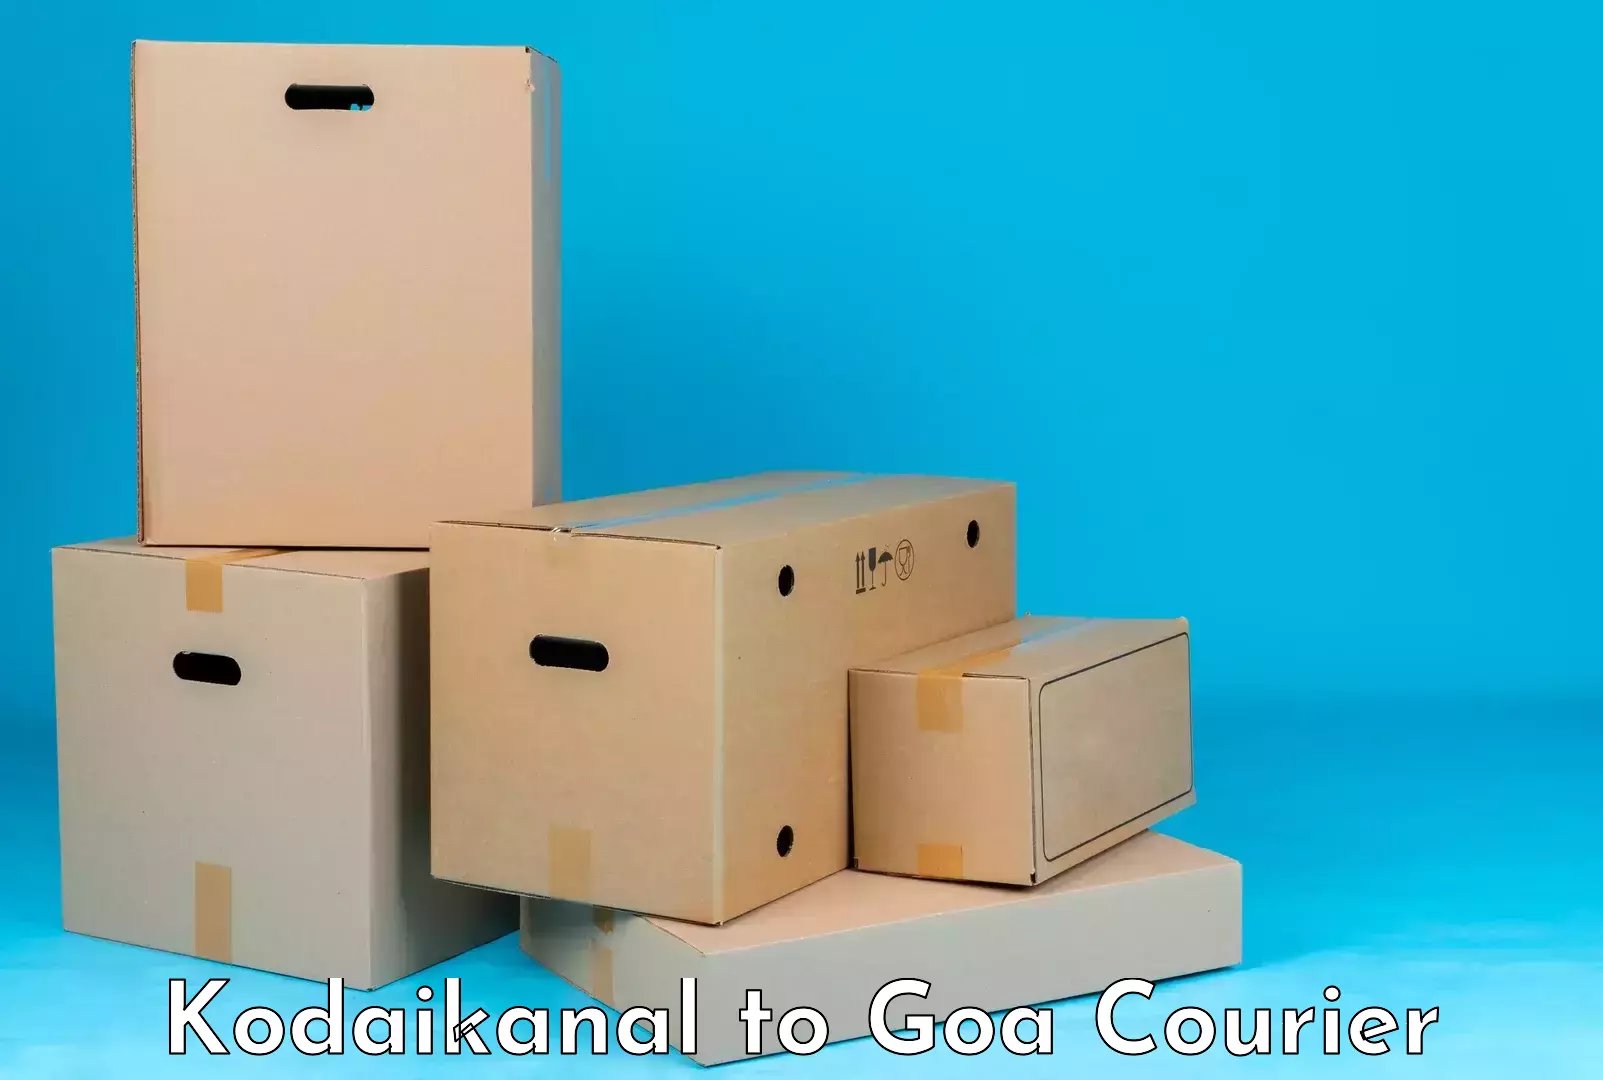 Luggage shipment specialists Kodaikanal to NIT Goa